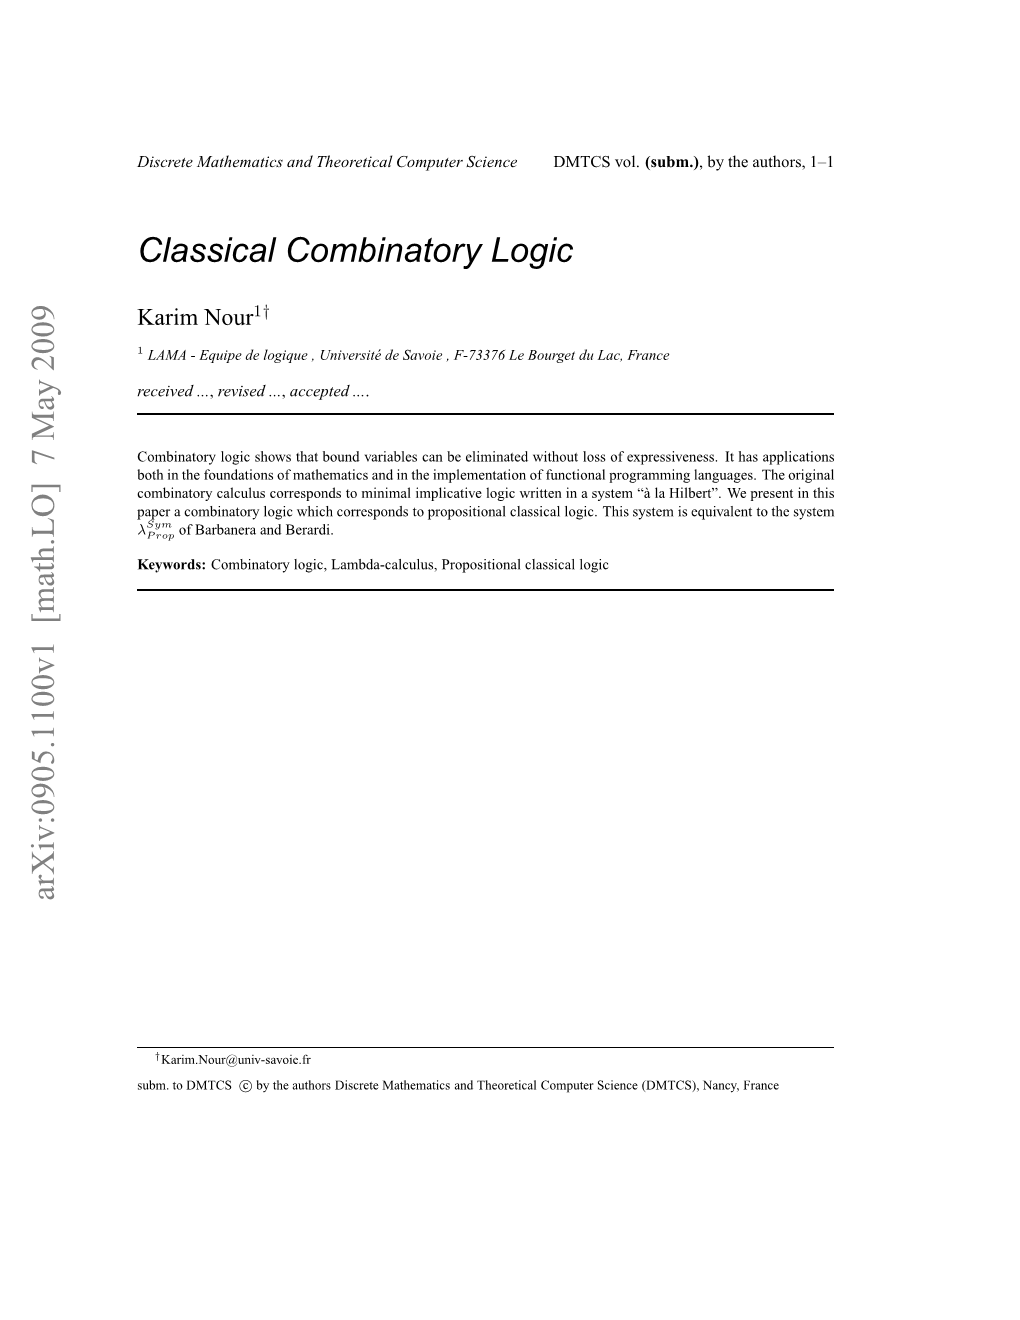 Classical Combinatory Logic 3